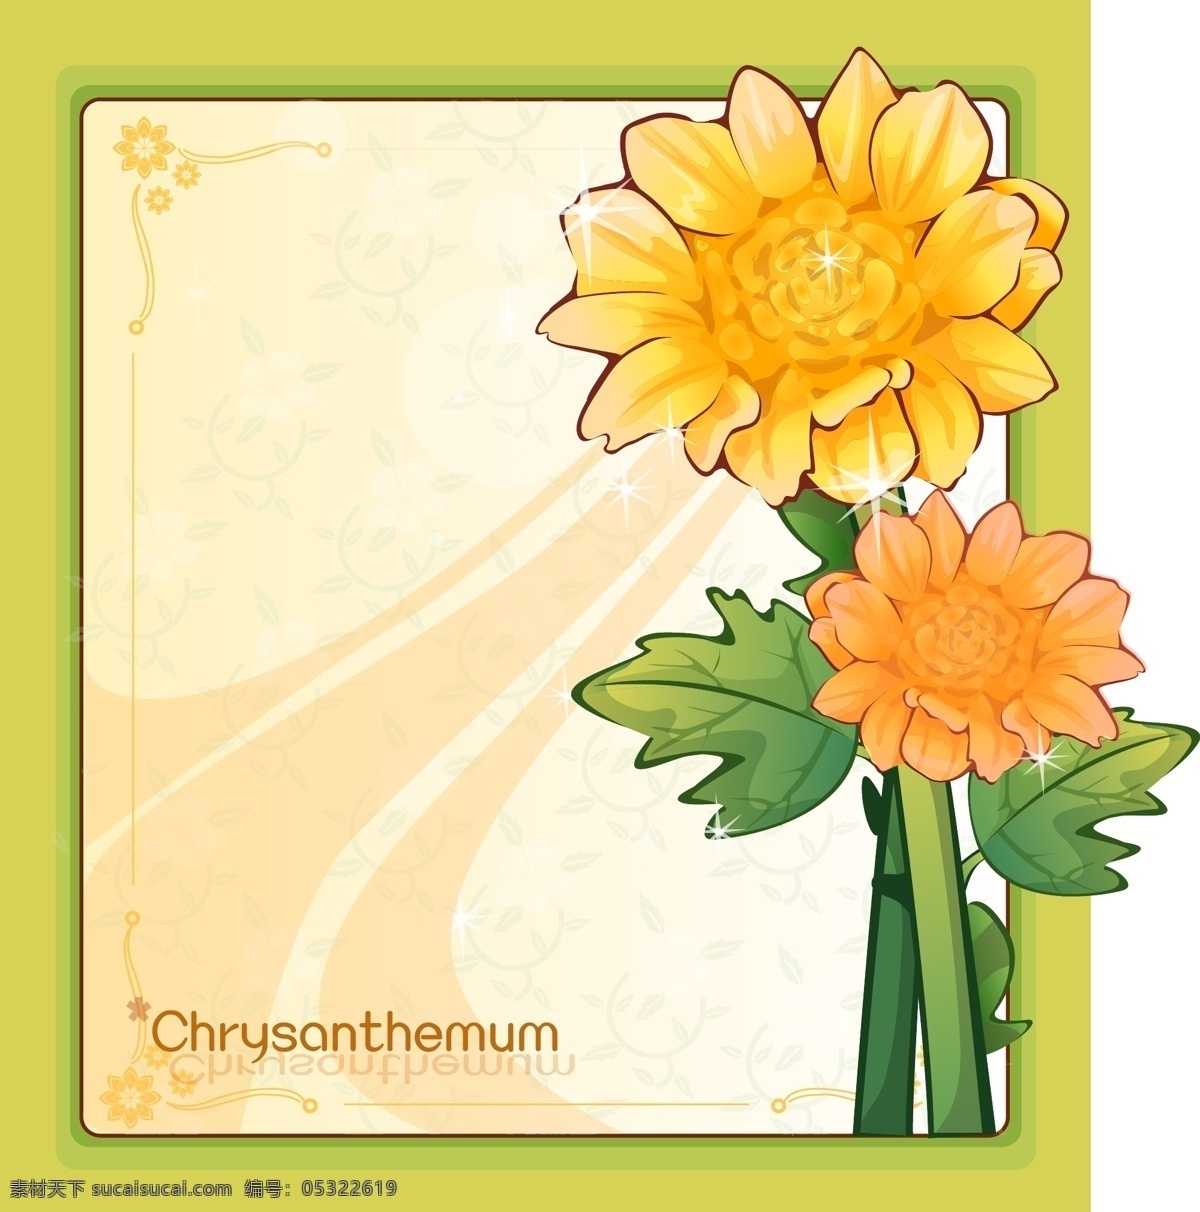 菊花 花边 ai矢量图 背景 边框 底纹 花边素材 黄色花朵 菊科植物 花纹花边